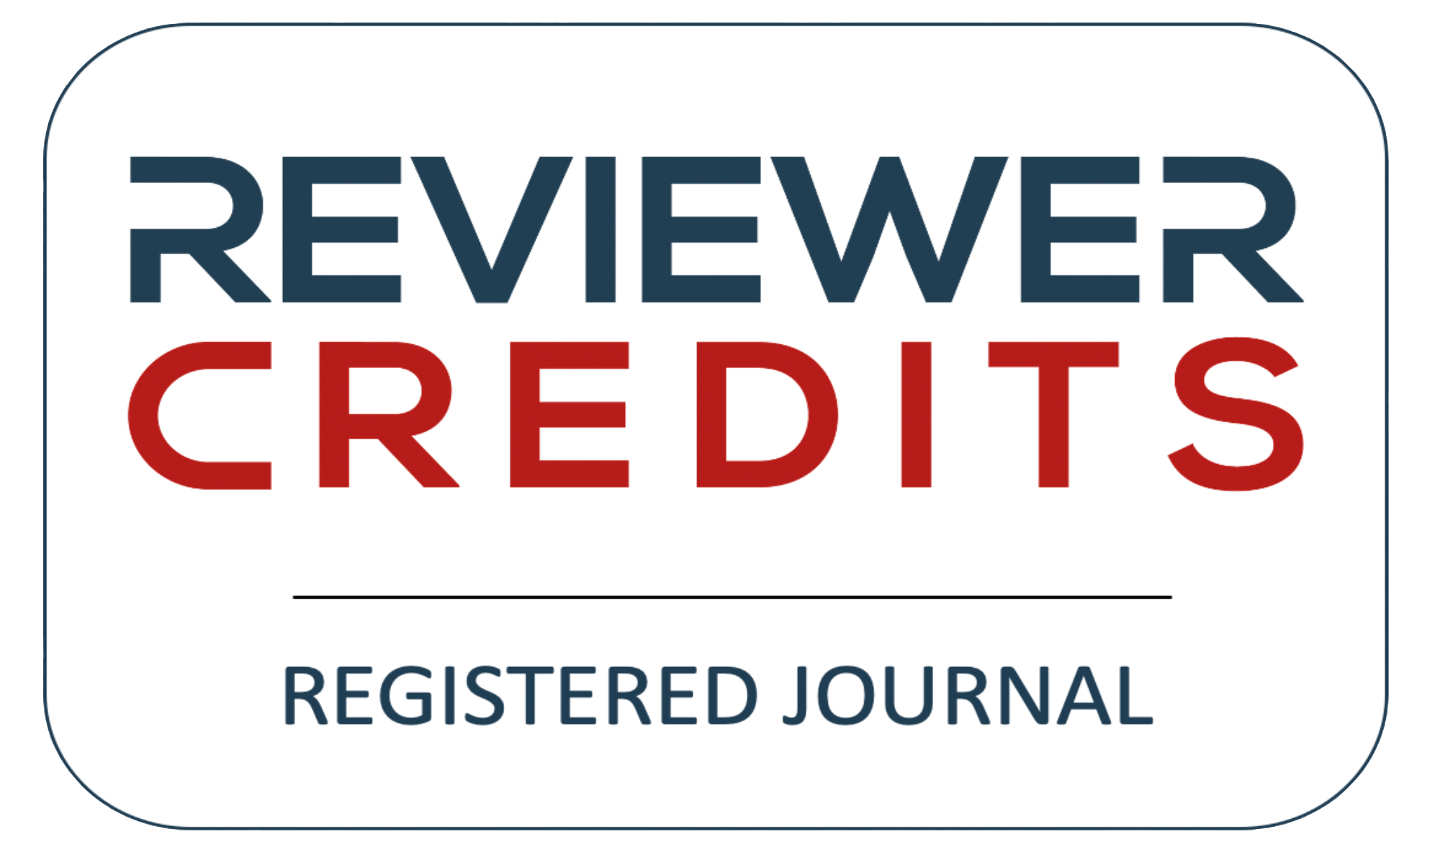 ReviewerCredit